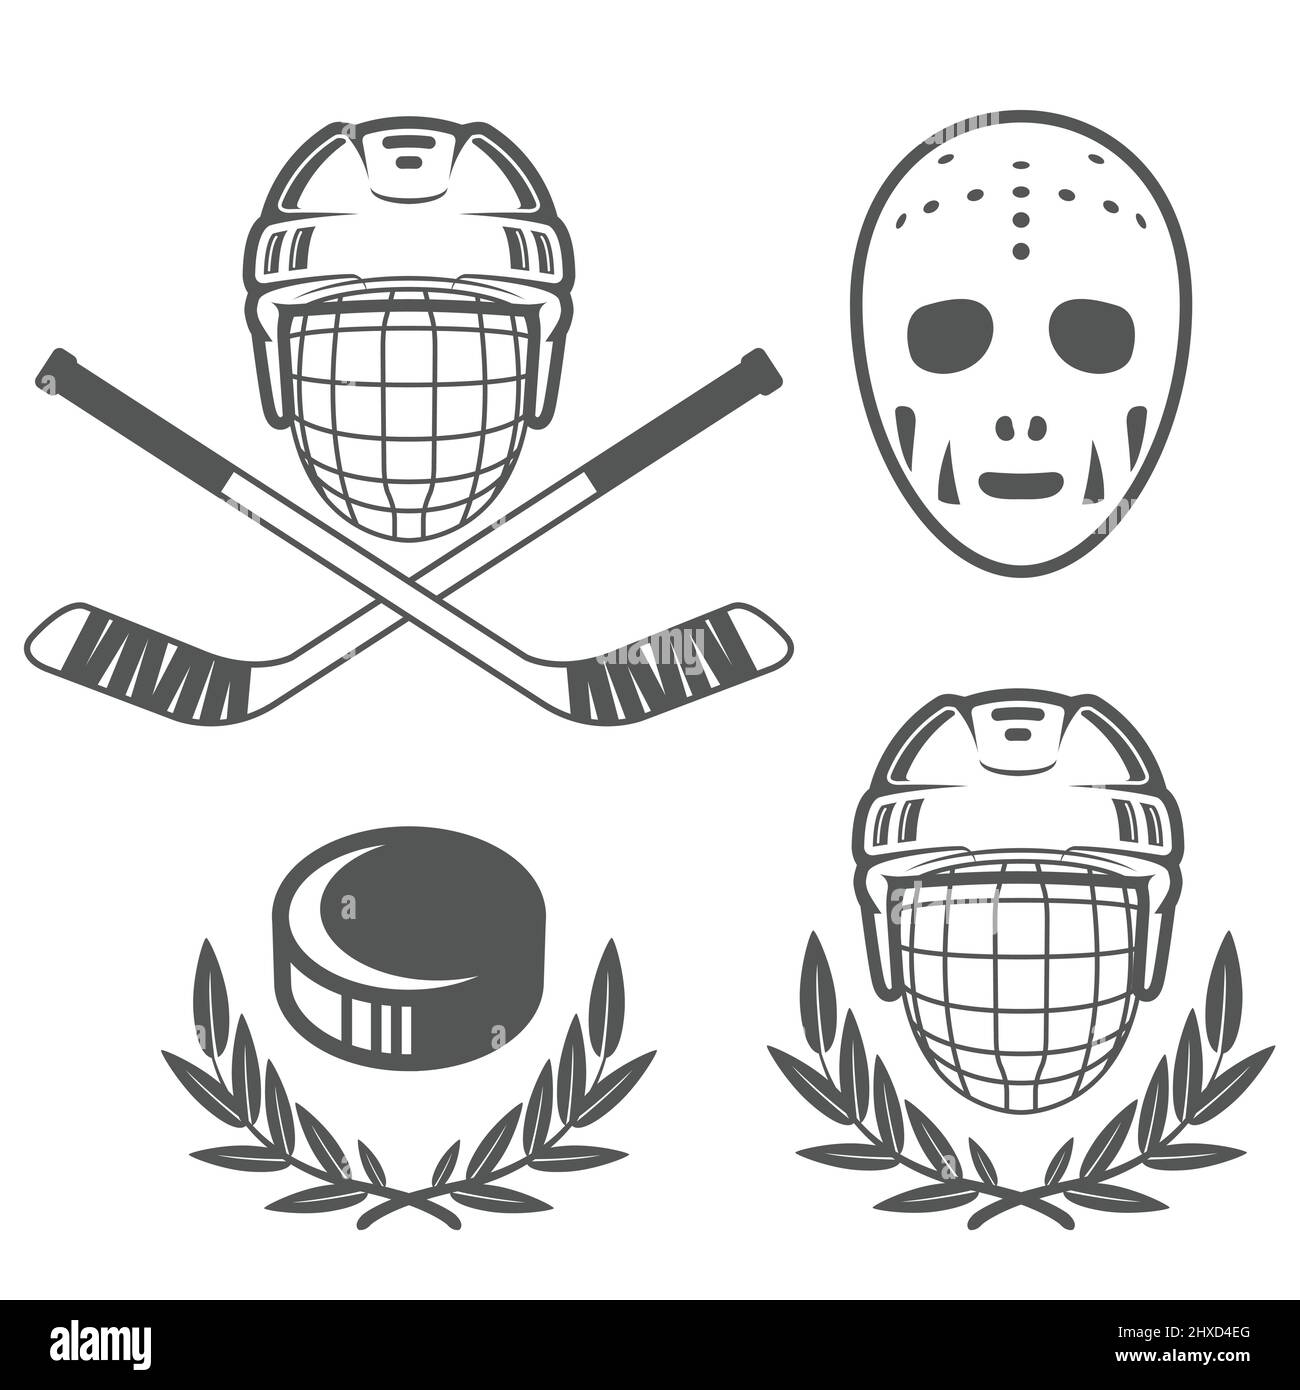 Eishockey-Insignien, Hockeyhelm und Retro-Torwartmaske, Hockey-Puck-Logos, Vektor Stock Vektor